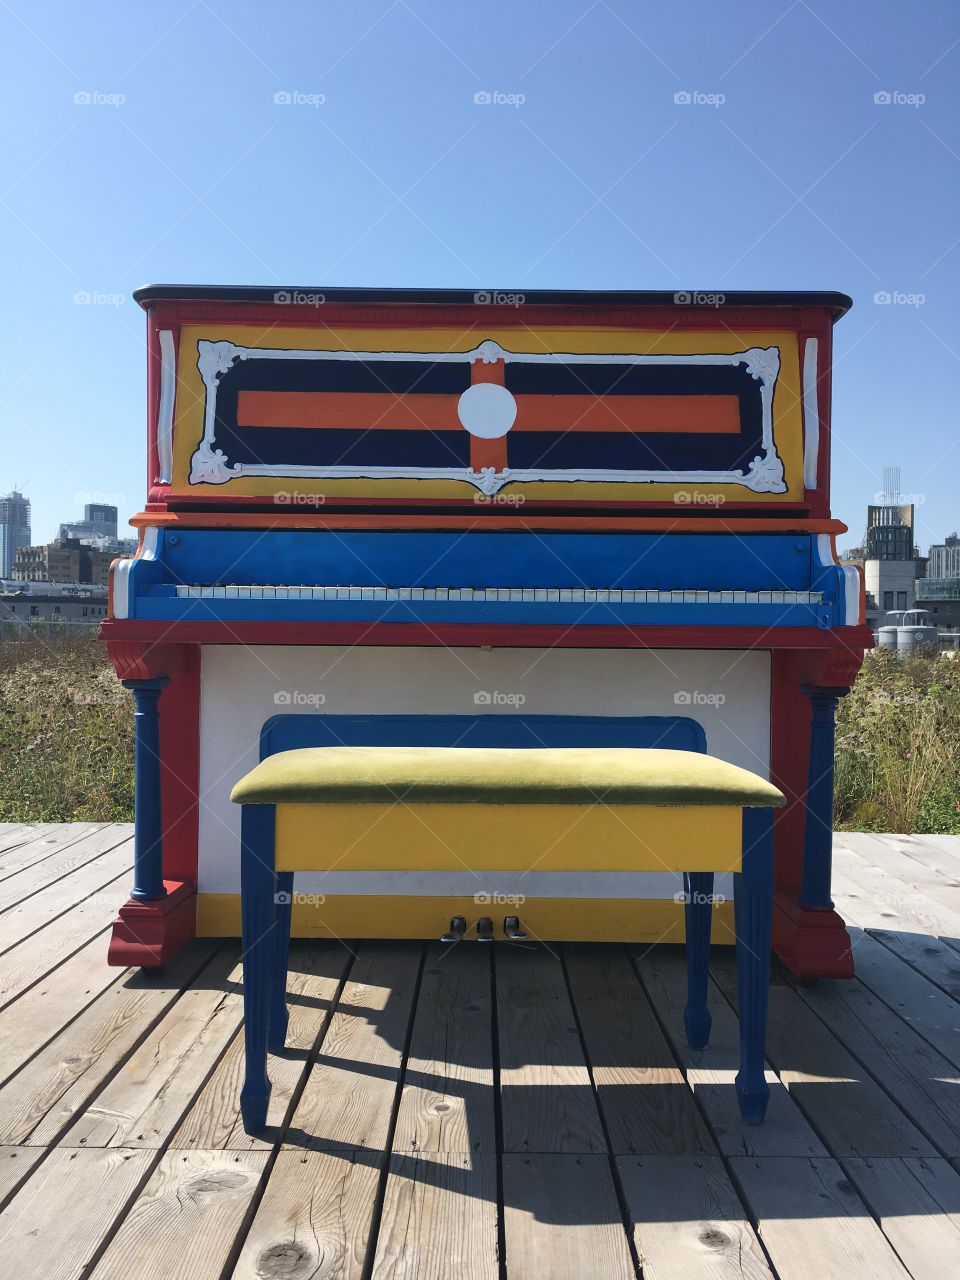 Rainbow piano